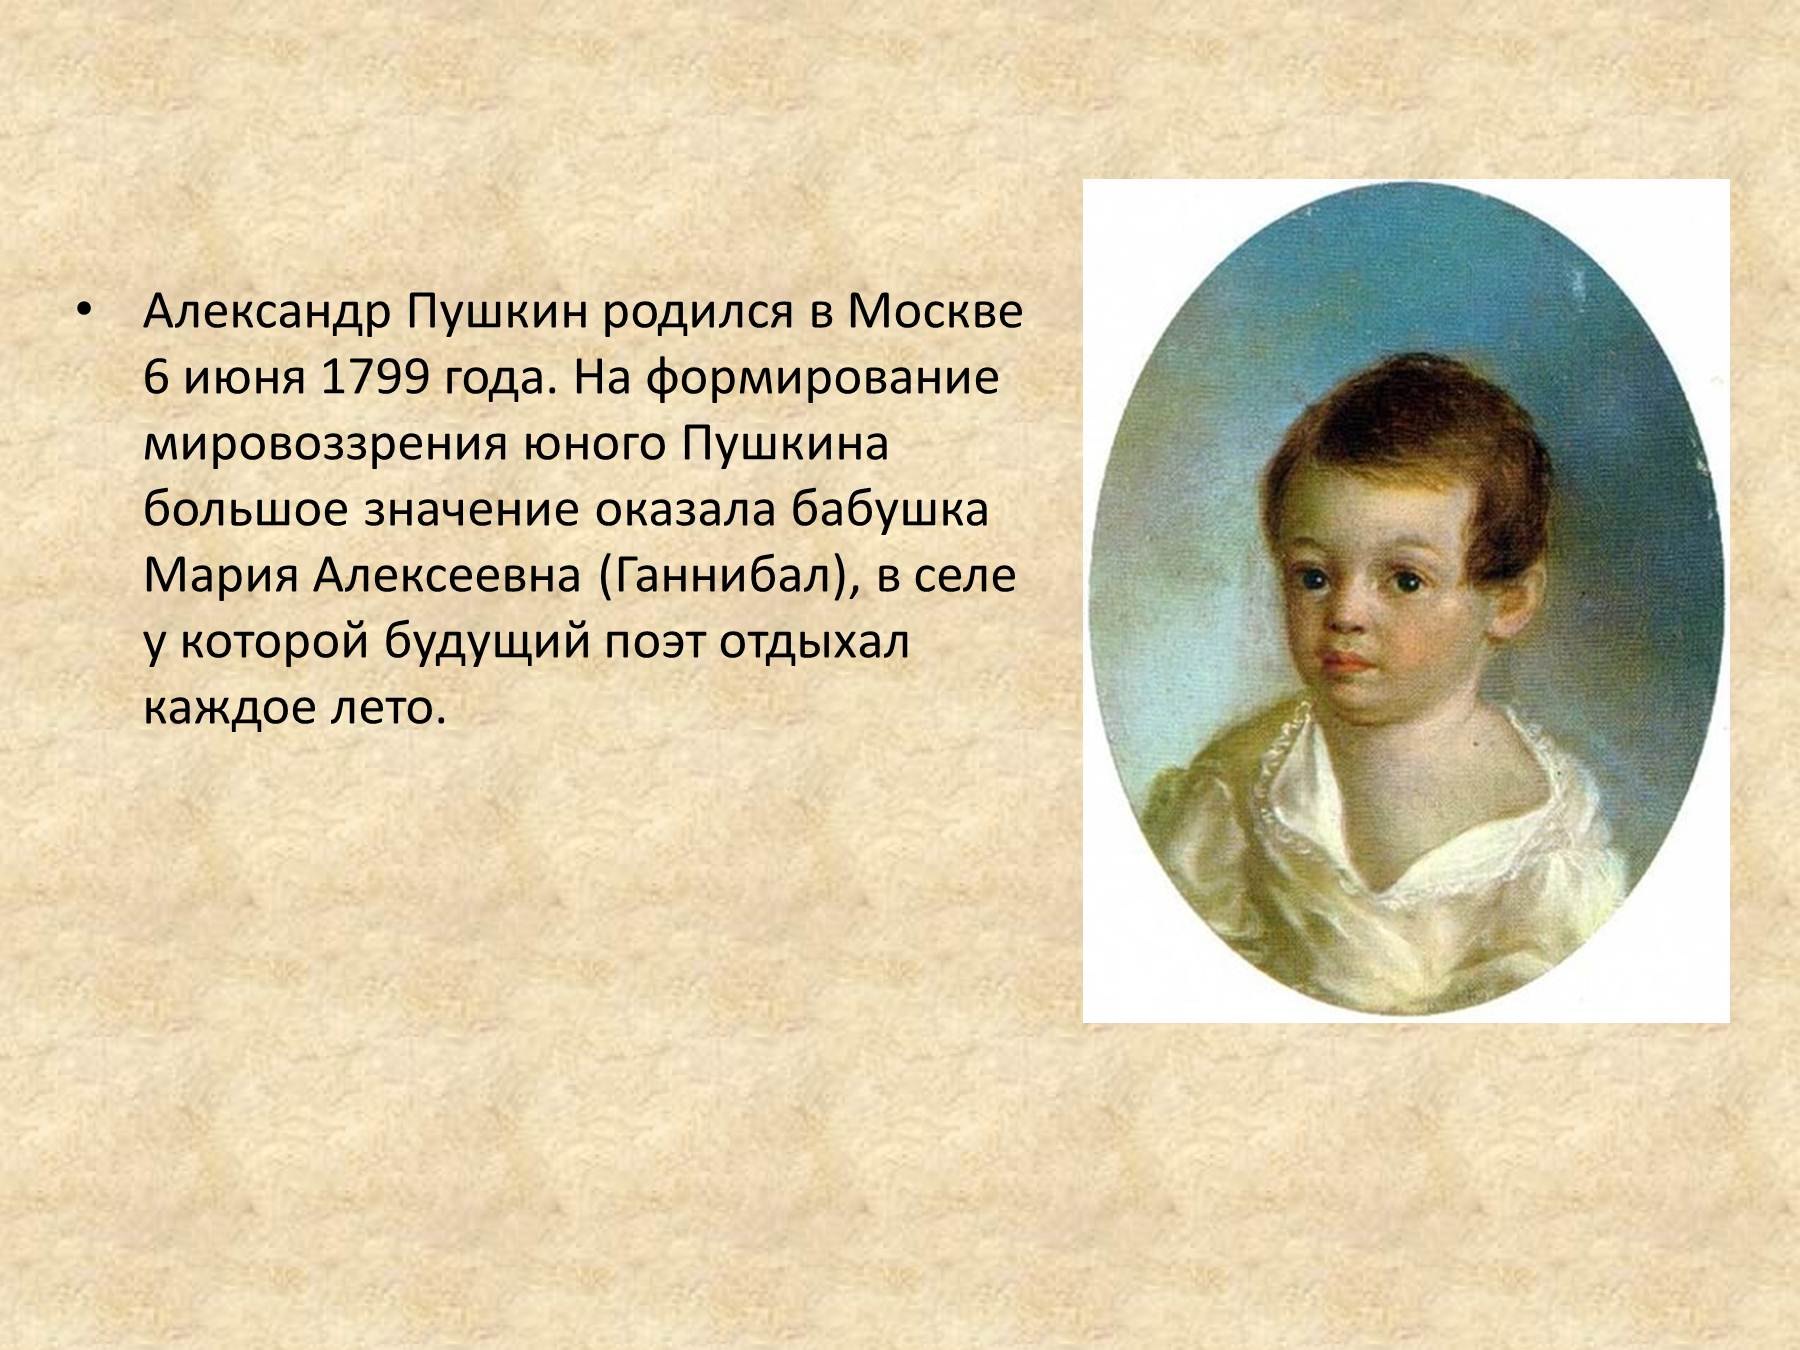 Картинки для презентации о Пушкине